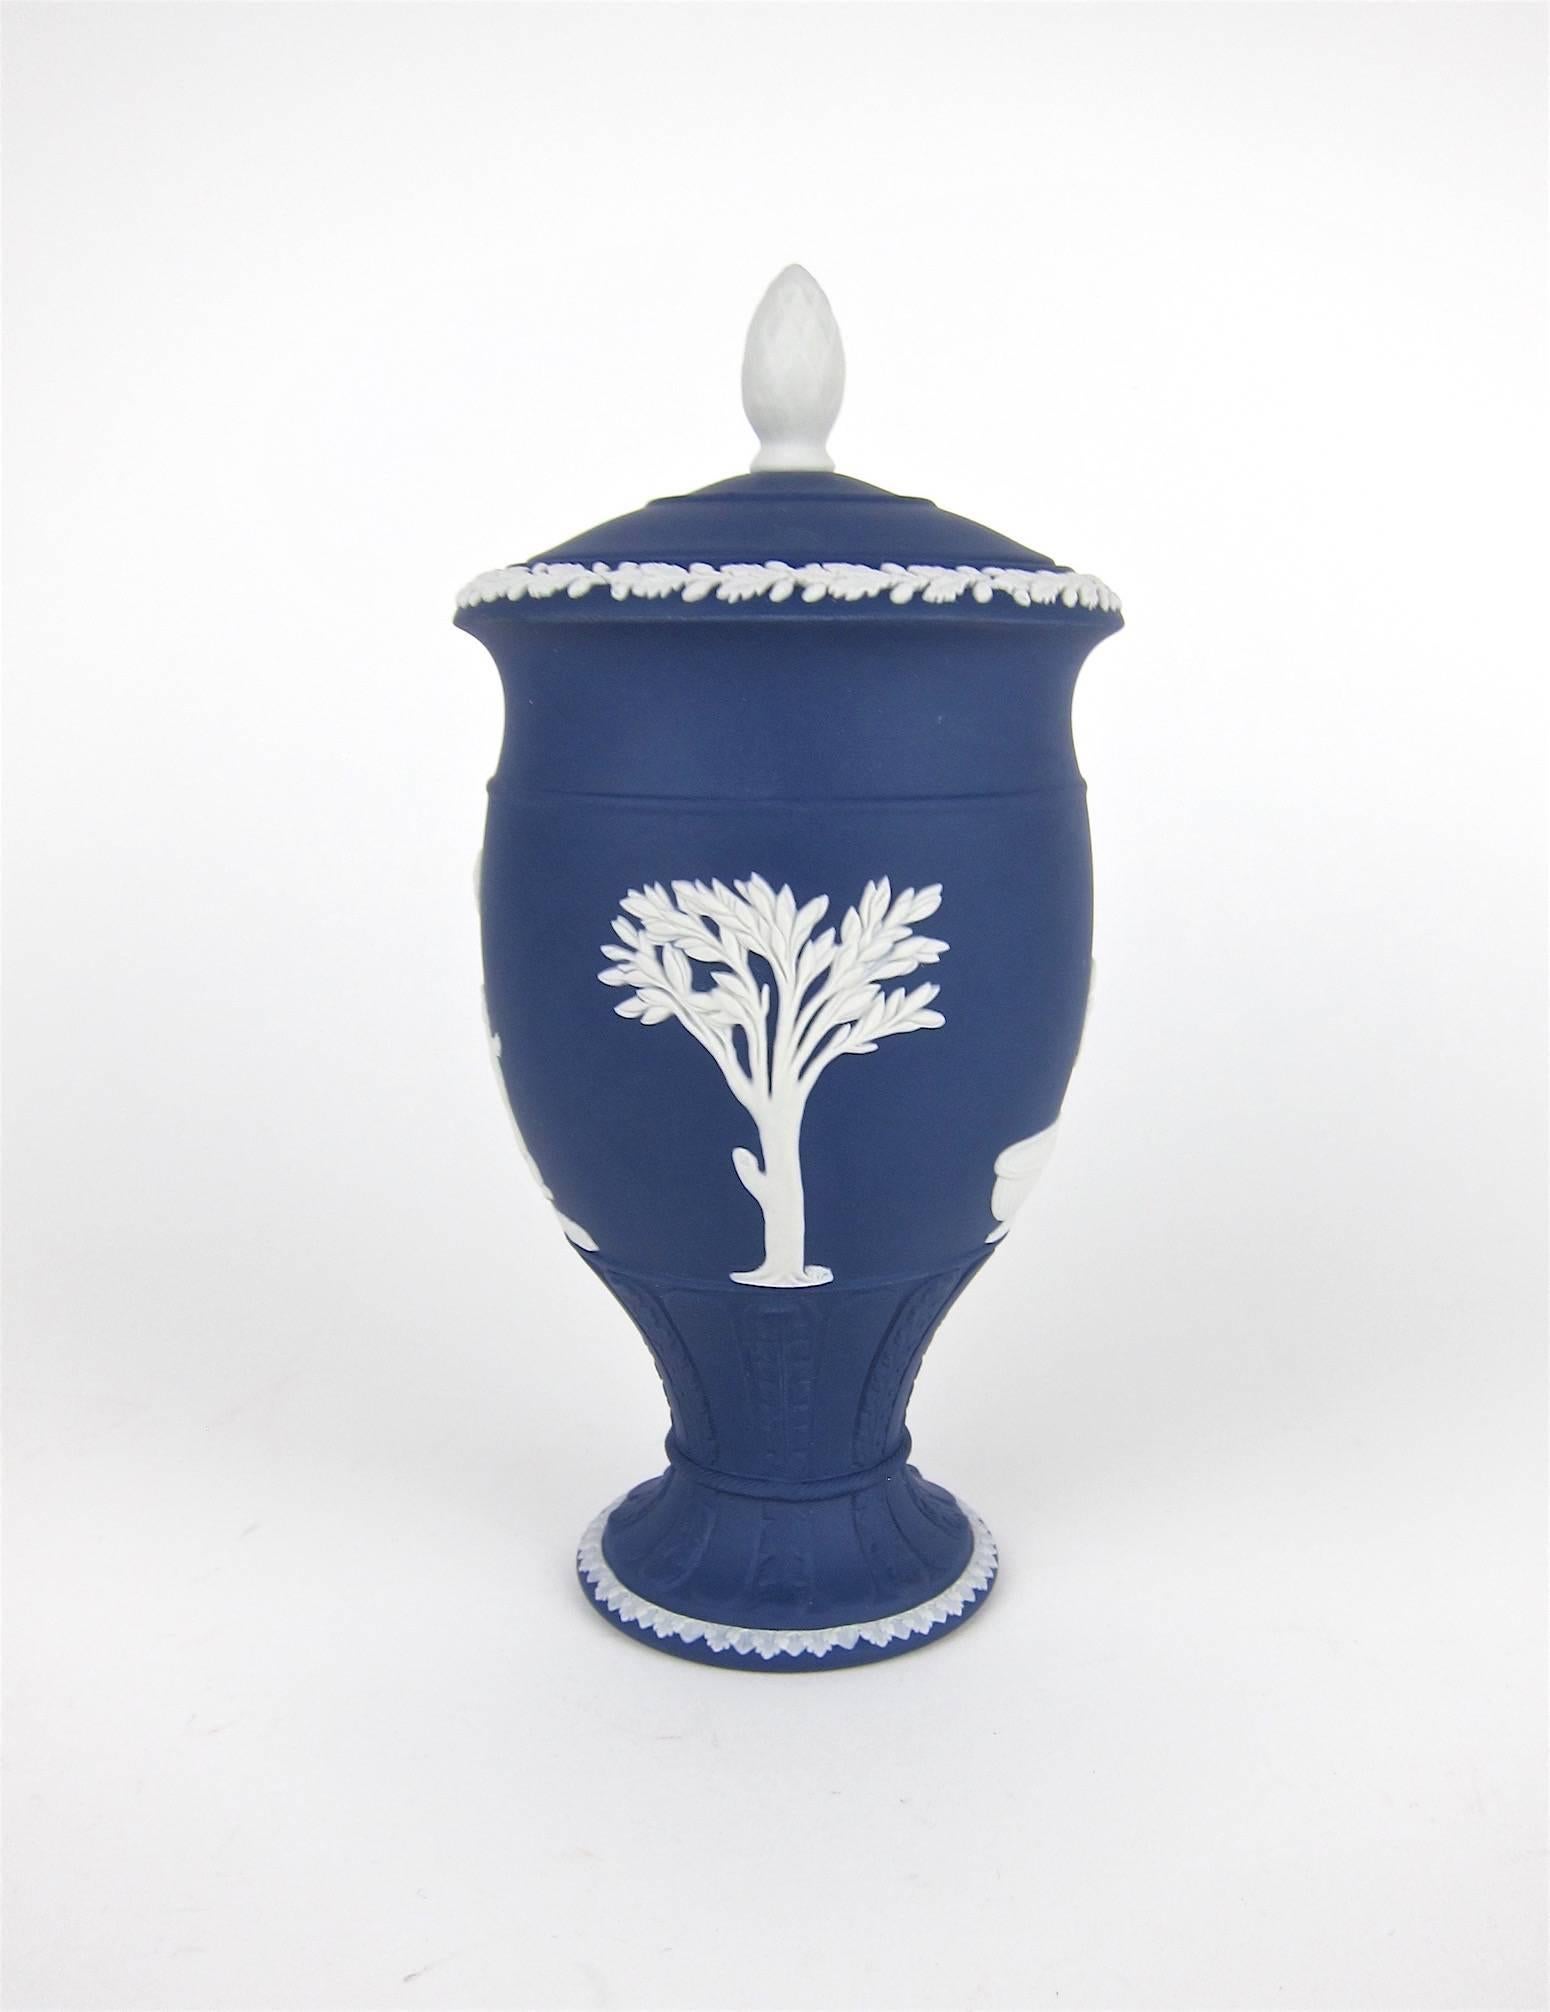 Neoclassical Wedgwood Classical Covered Urn in White on Portland Blue Jasper Ware